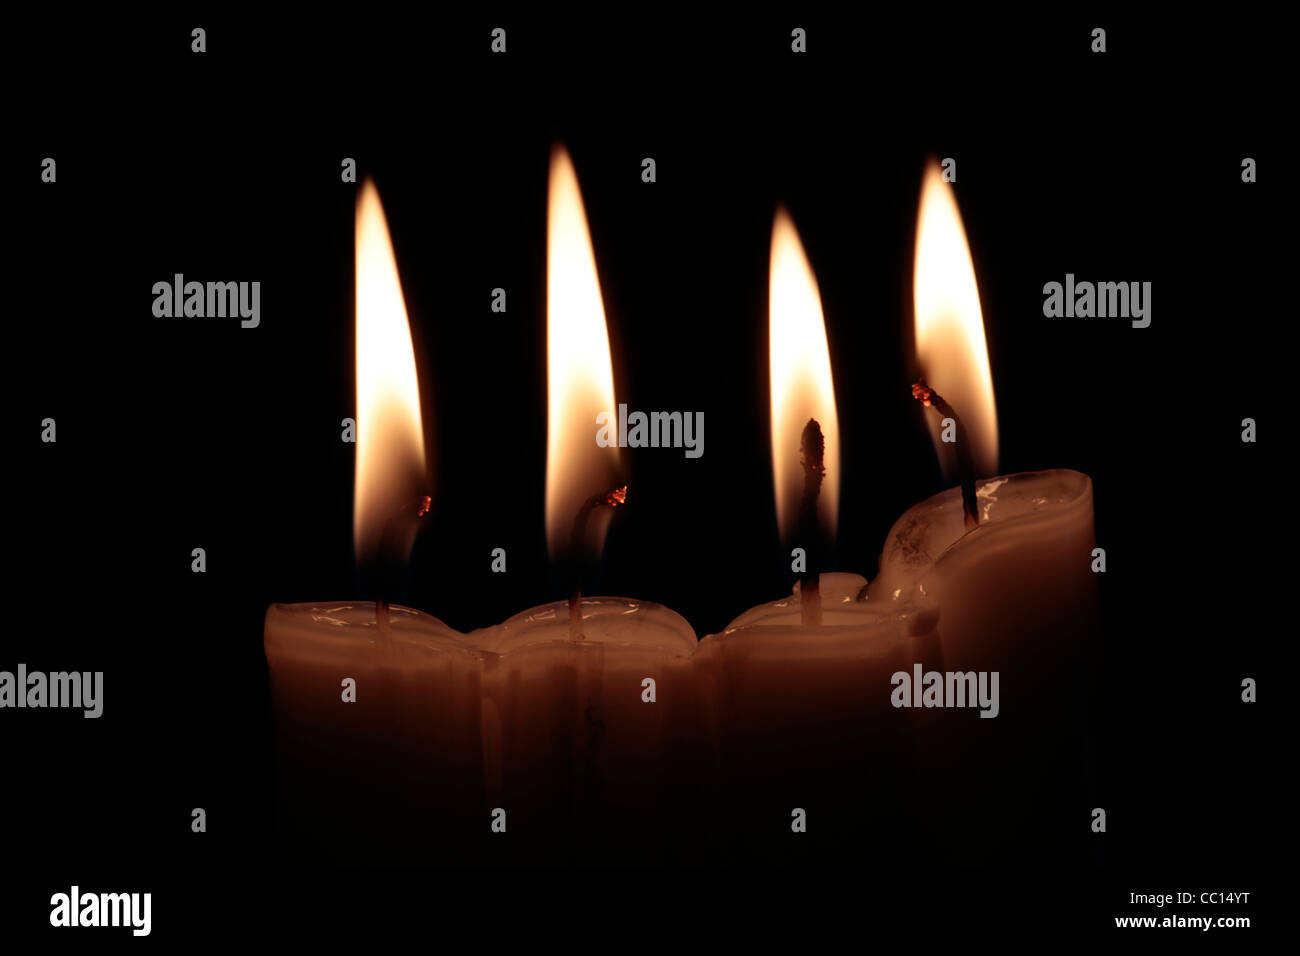 Quattro candele accese su sfondo nero, con incandescente stoppini, inquadratura orizzontale Foto Stock